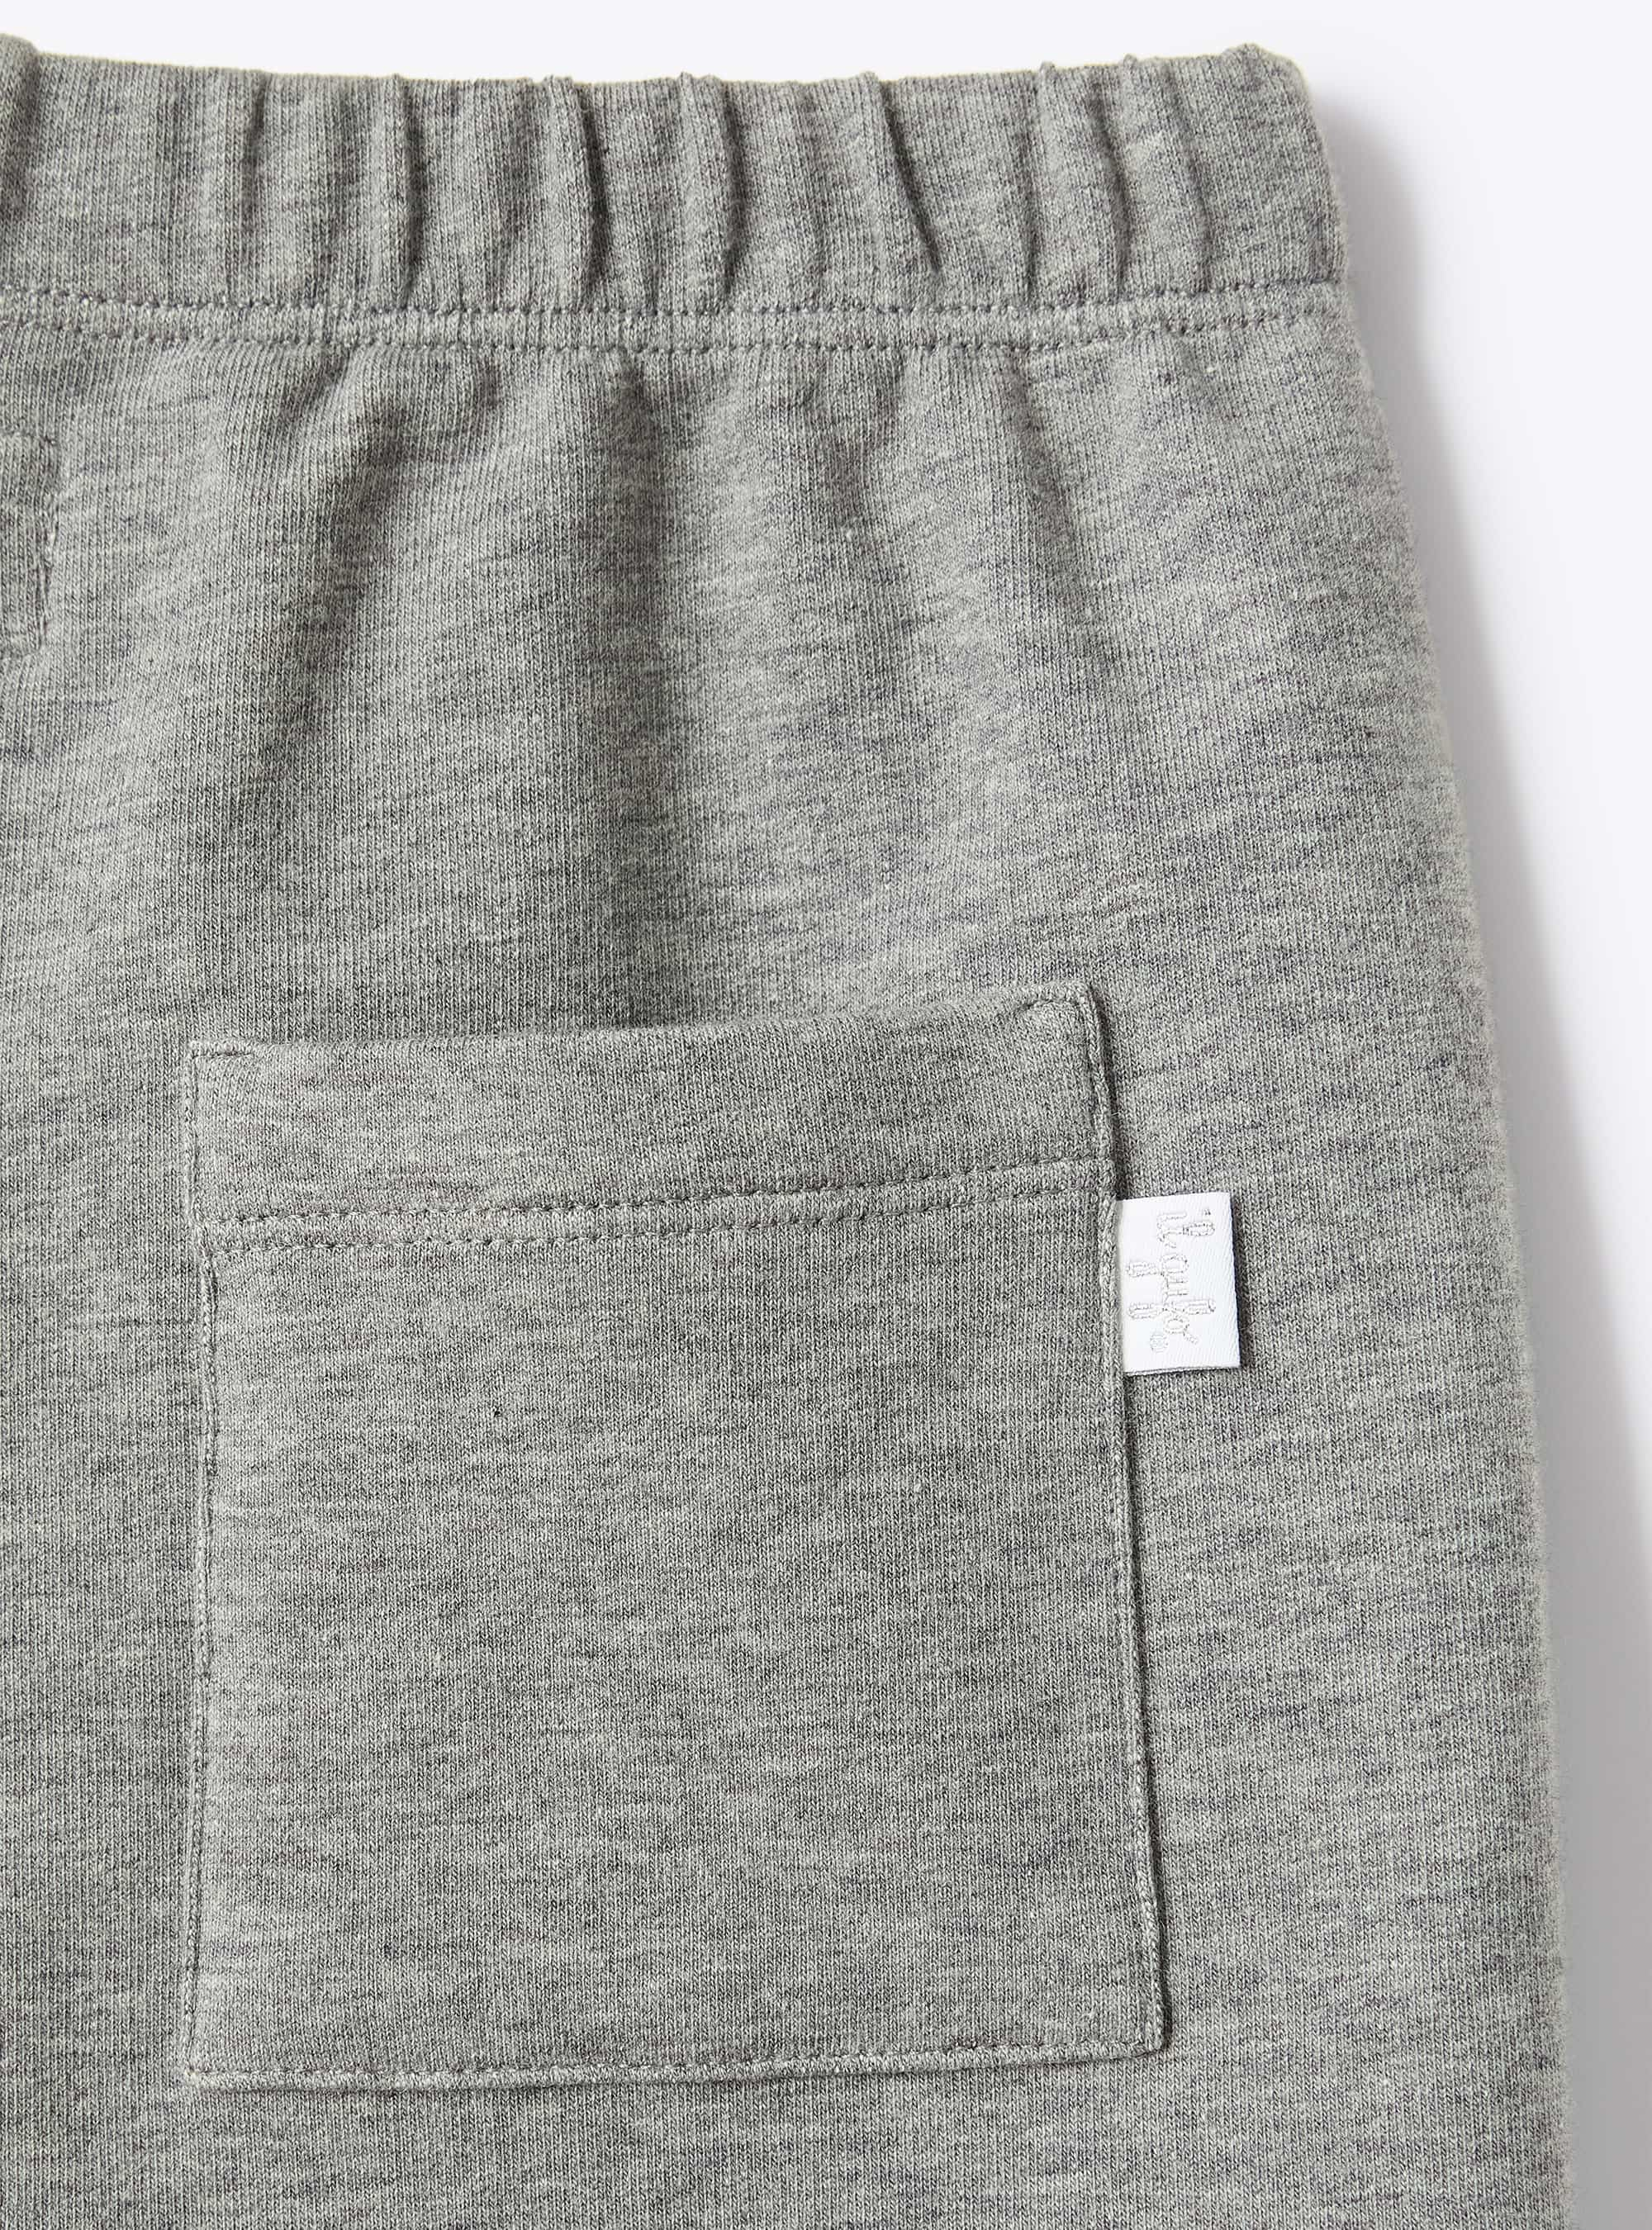 Pantalone in felpa stretch grigio - Grigio | Il Gufo